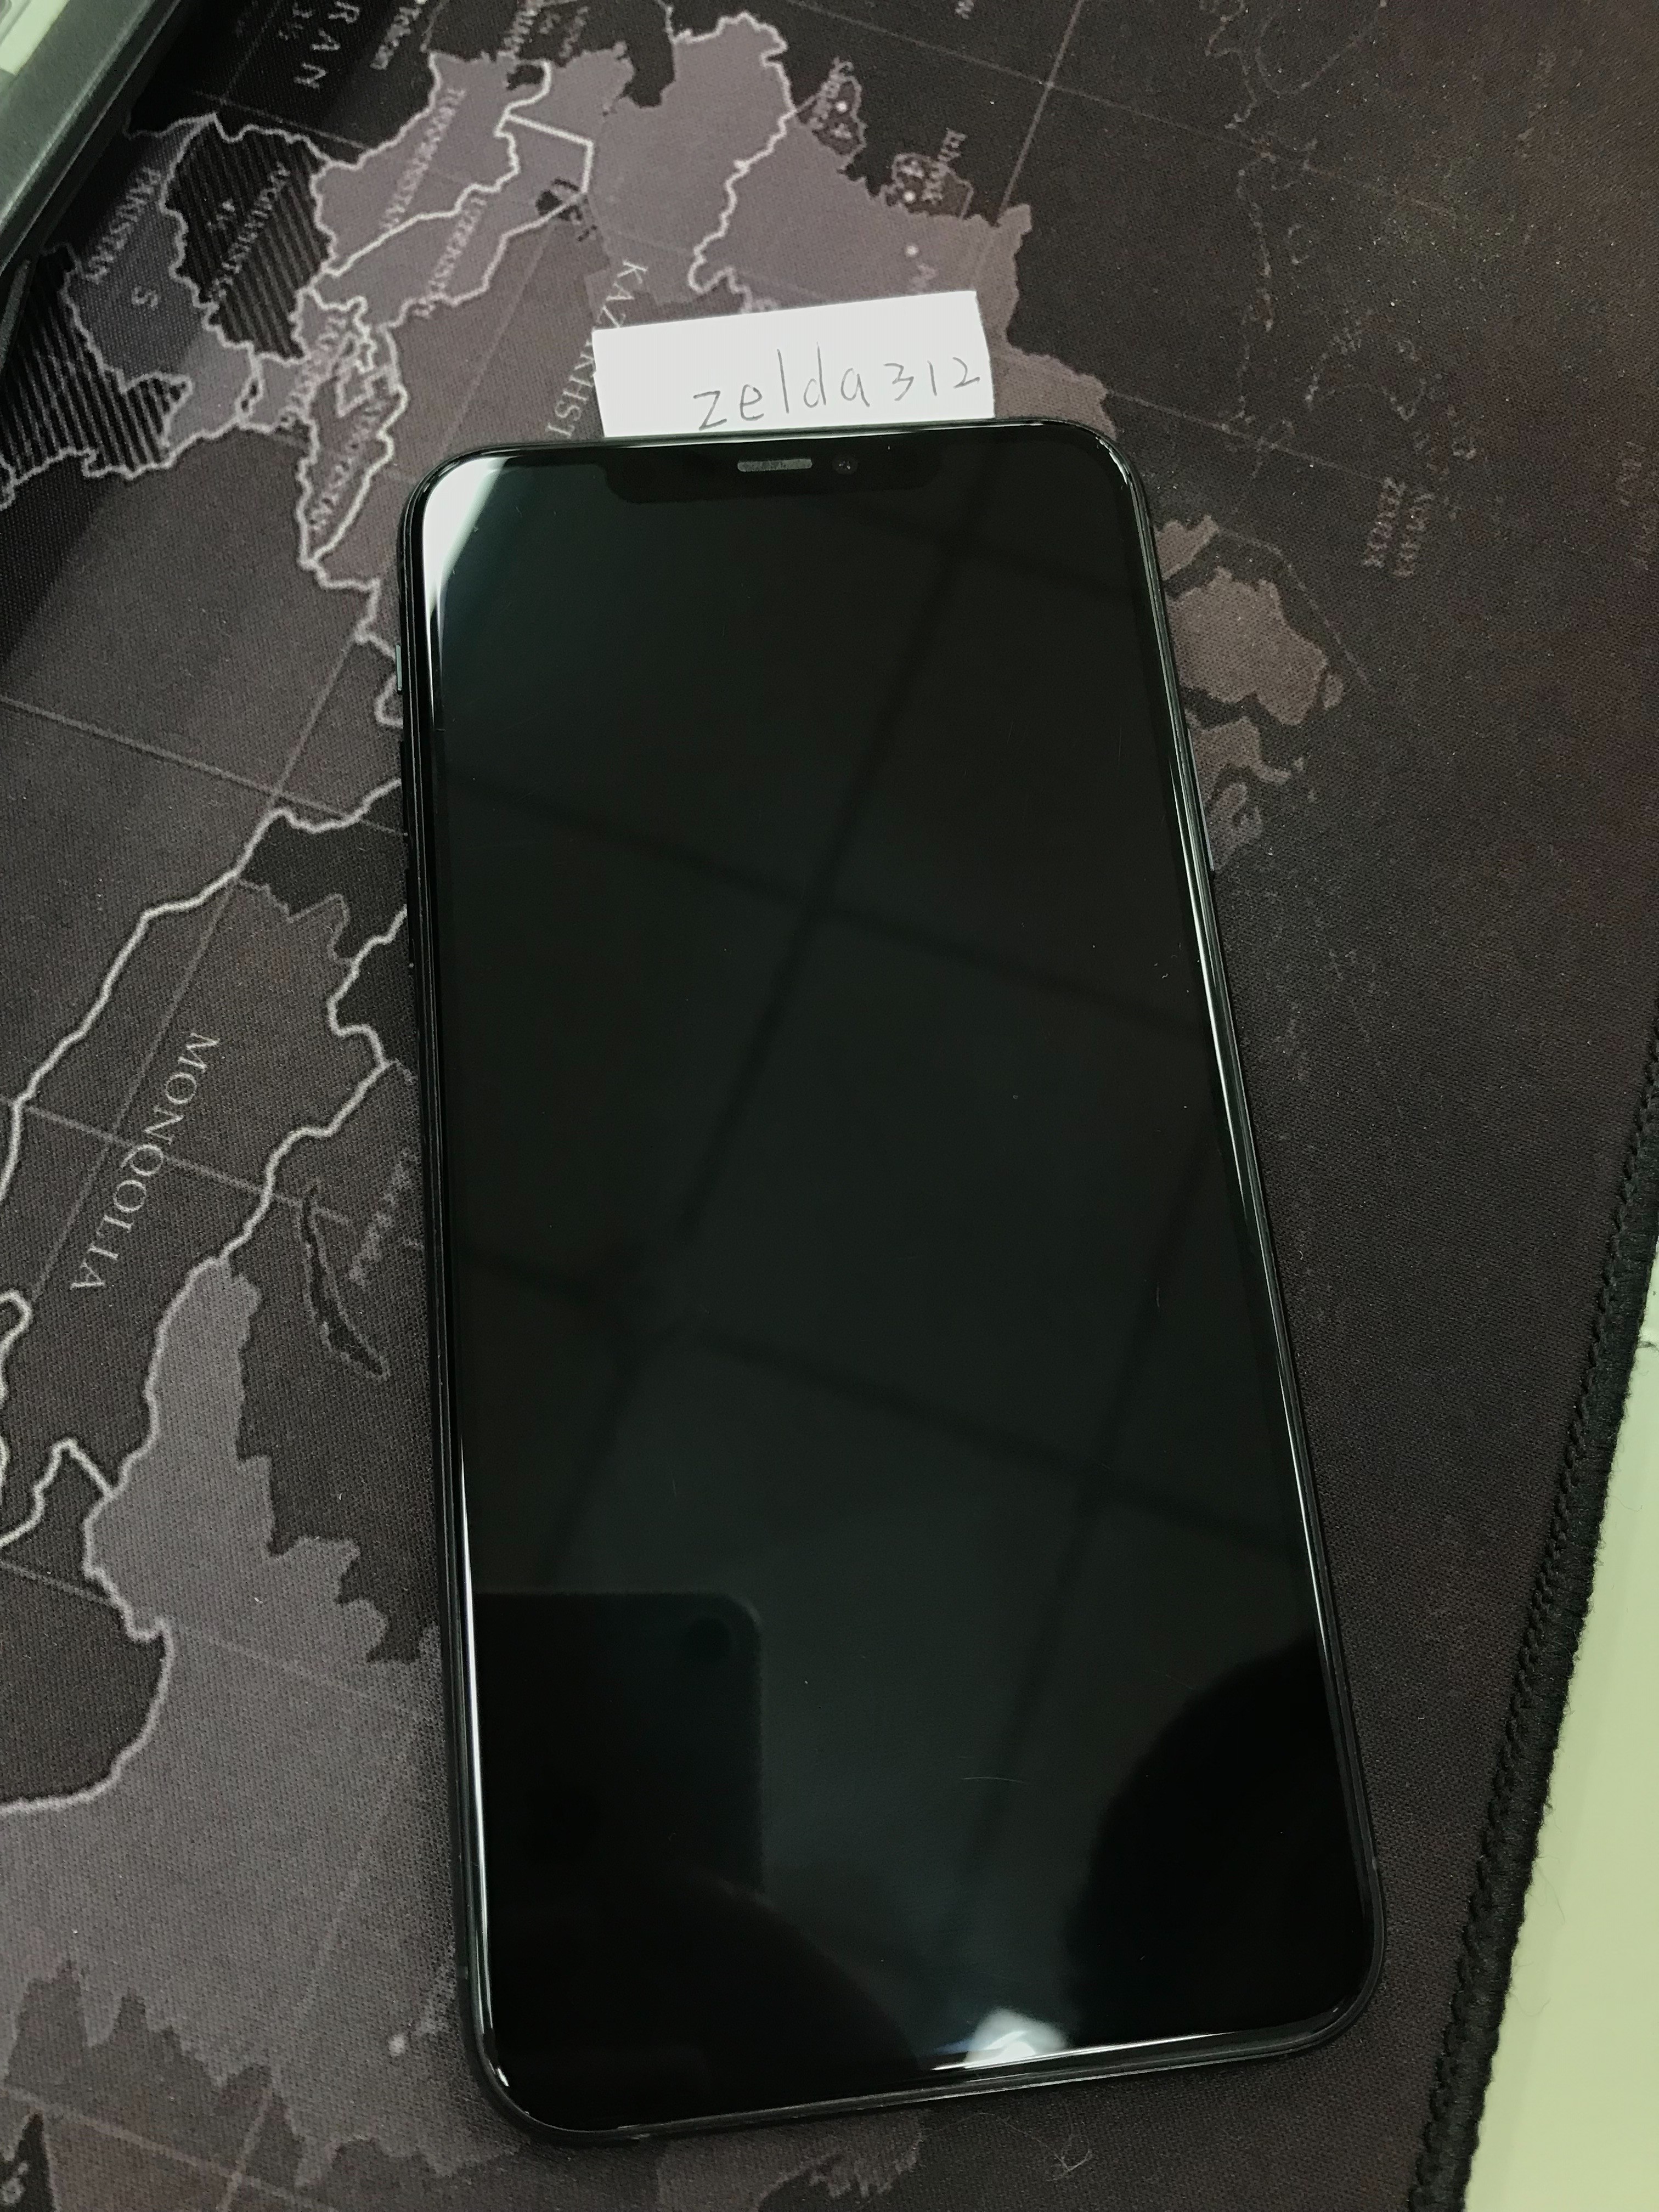 [販售] 竹北 iPhone 11 Pro Max 256G 夜幕綠